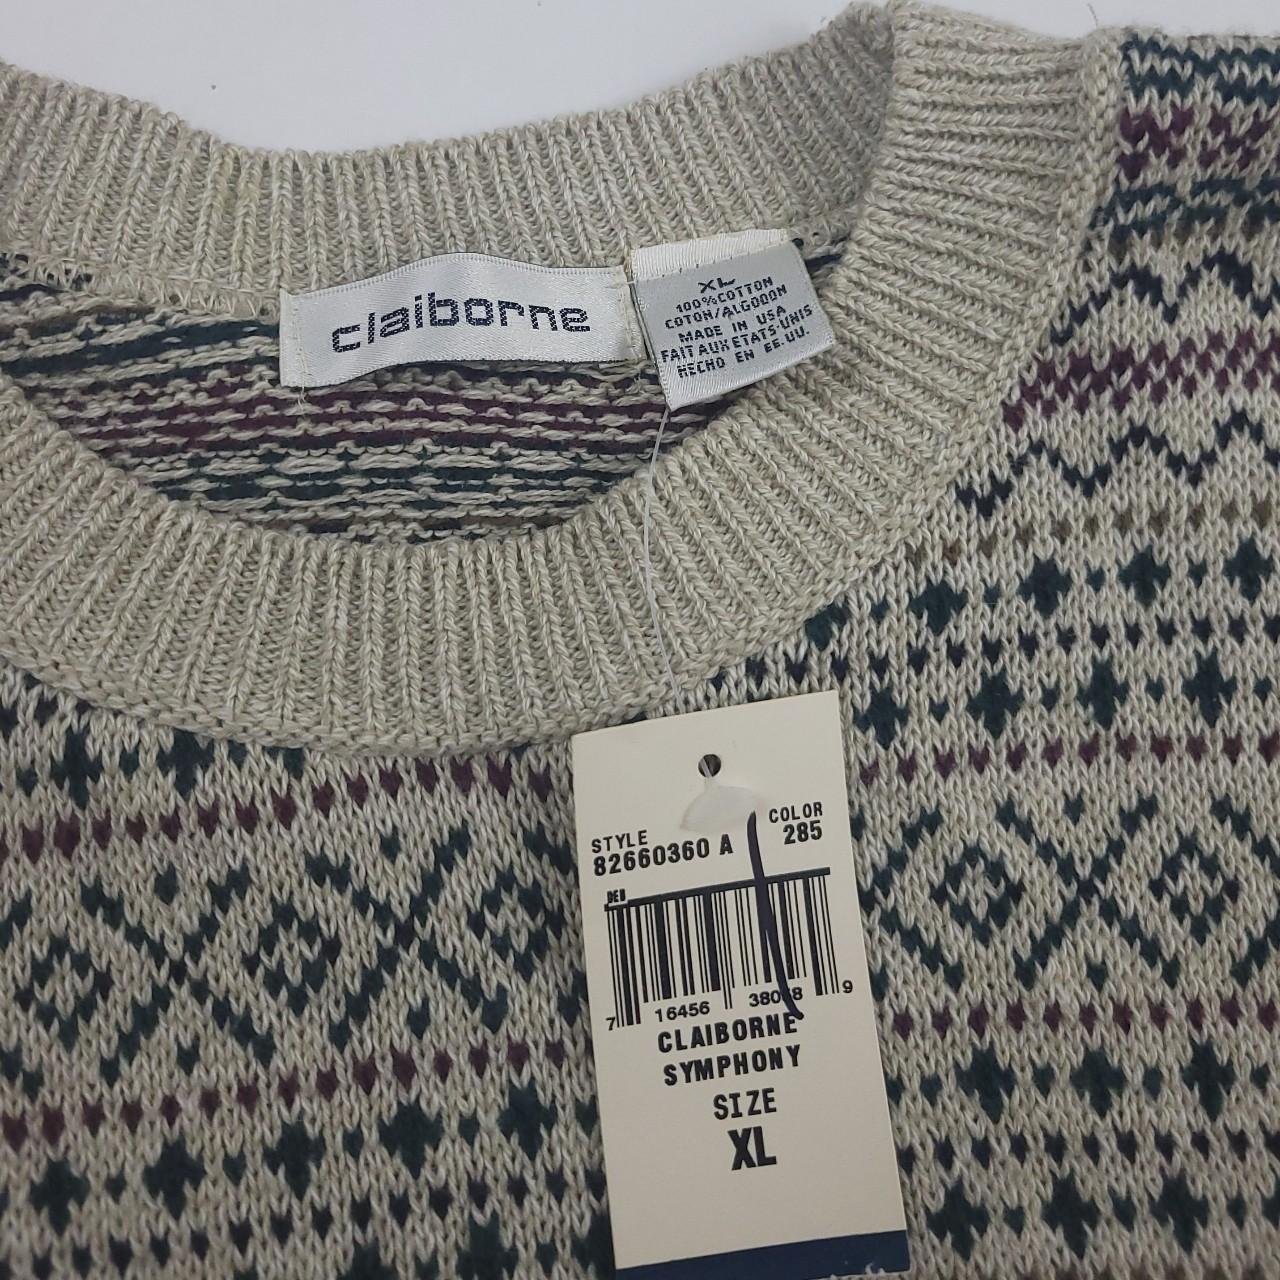 Vintage 90s Claiborne fair isle pattern knit... - Depop